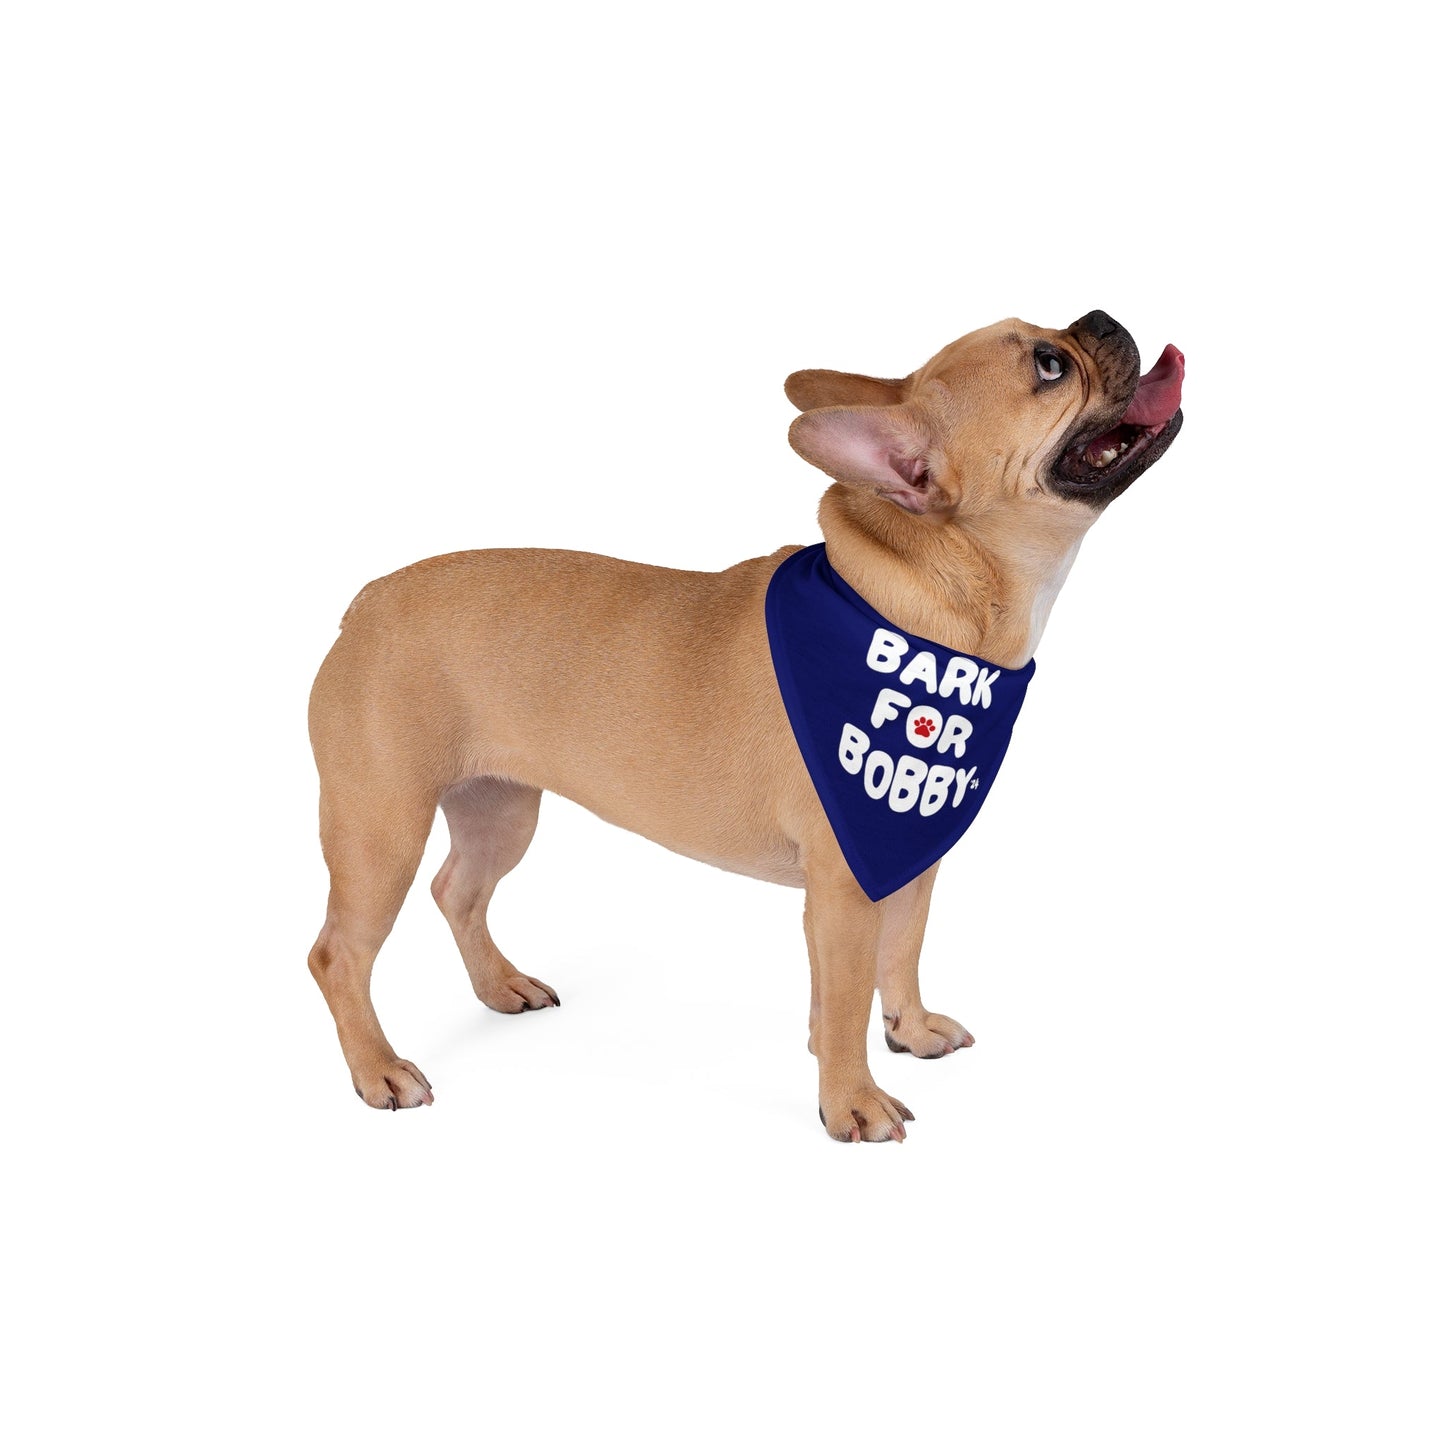 Bark for Bobby '24 Pet Bandana Navy - Team Kennedy Official Merchandise